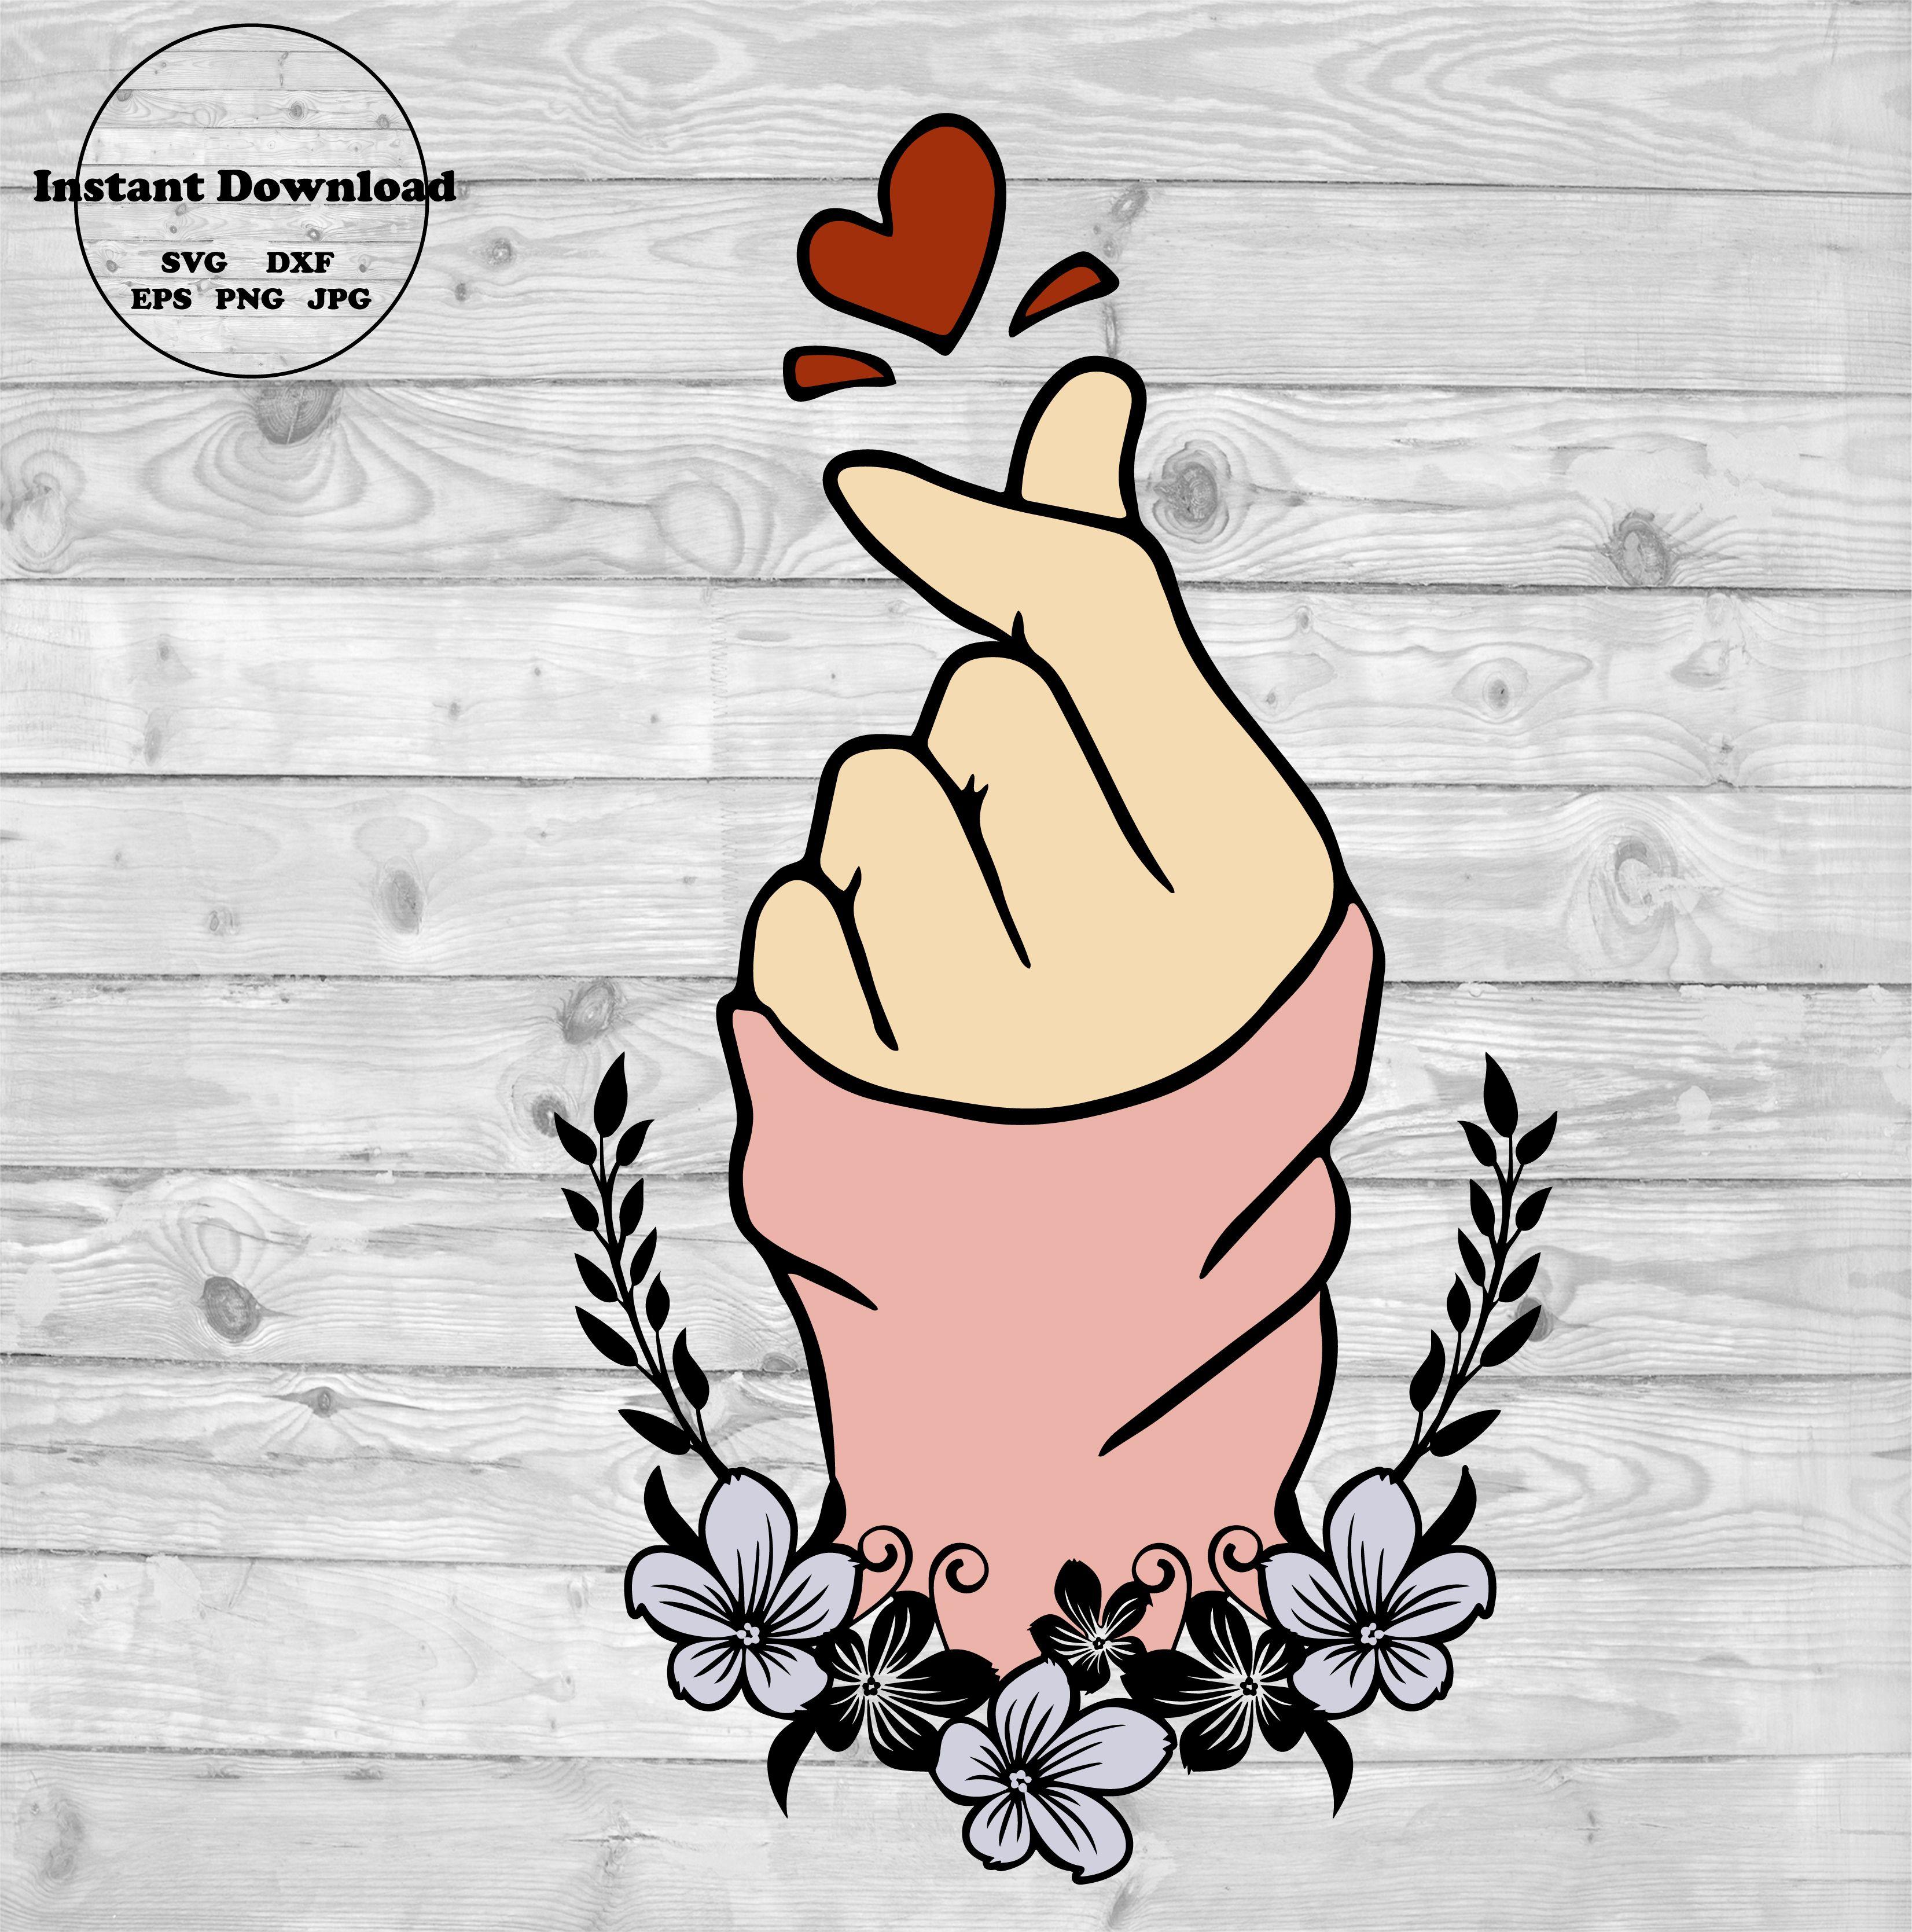 Korean Finger Heart Wallpapers - Top Free Korean Finger Heart